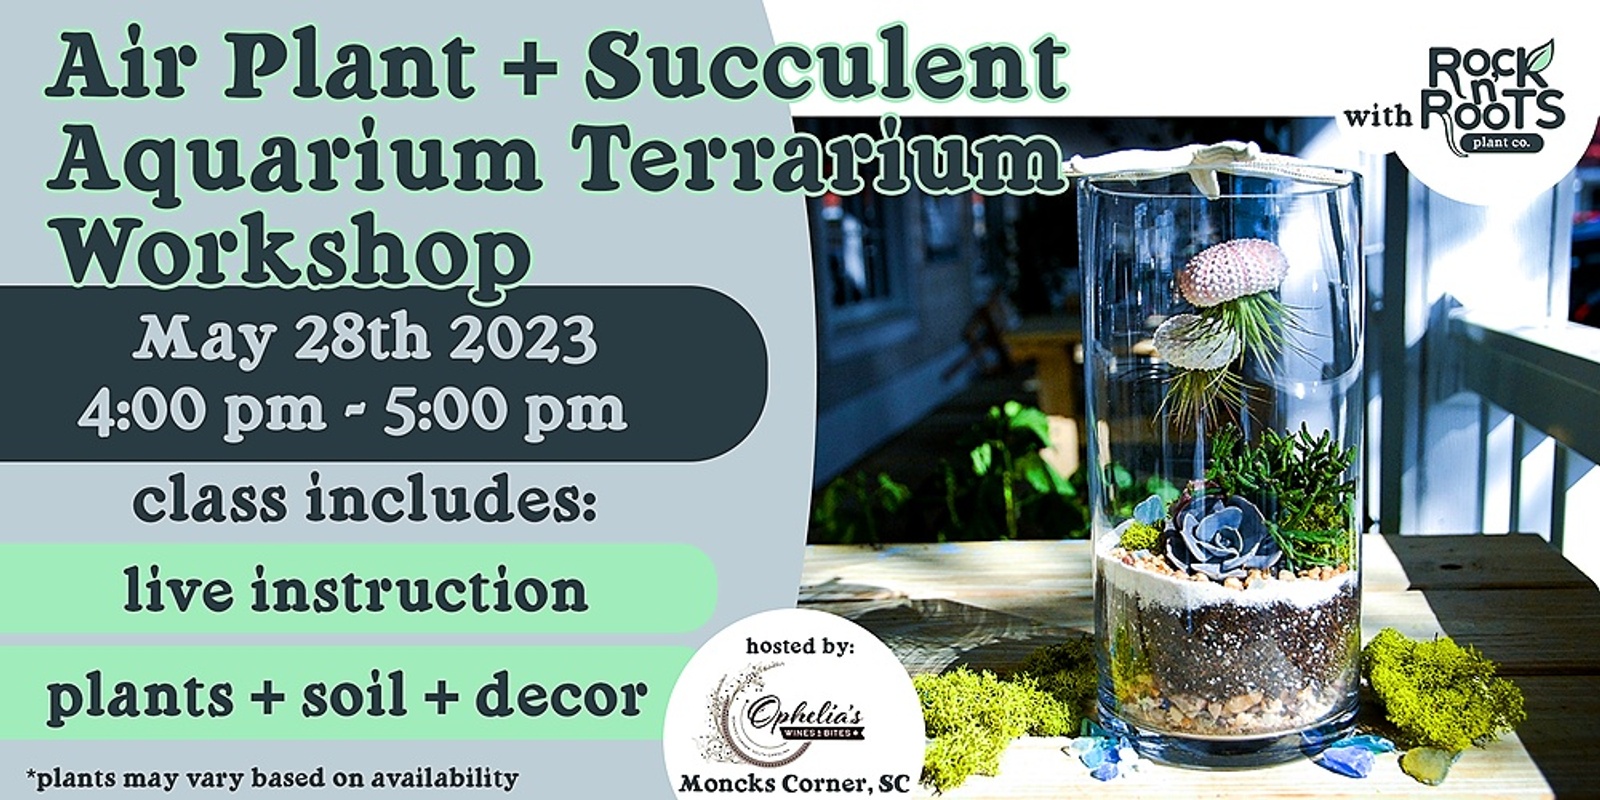 Air Plant + Succulent Aquarium Terrarium Workshop at Ophelia's Wines & Bites (Moncks Corner, SC)